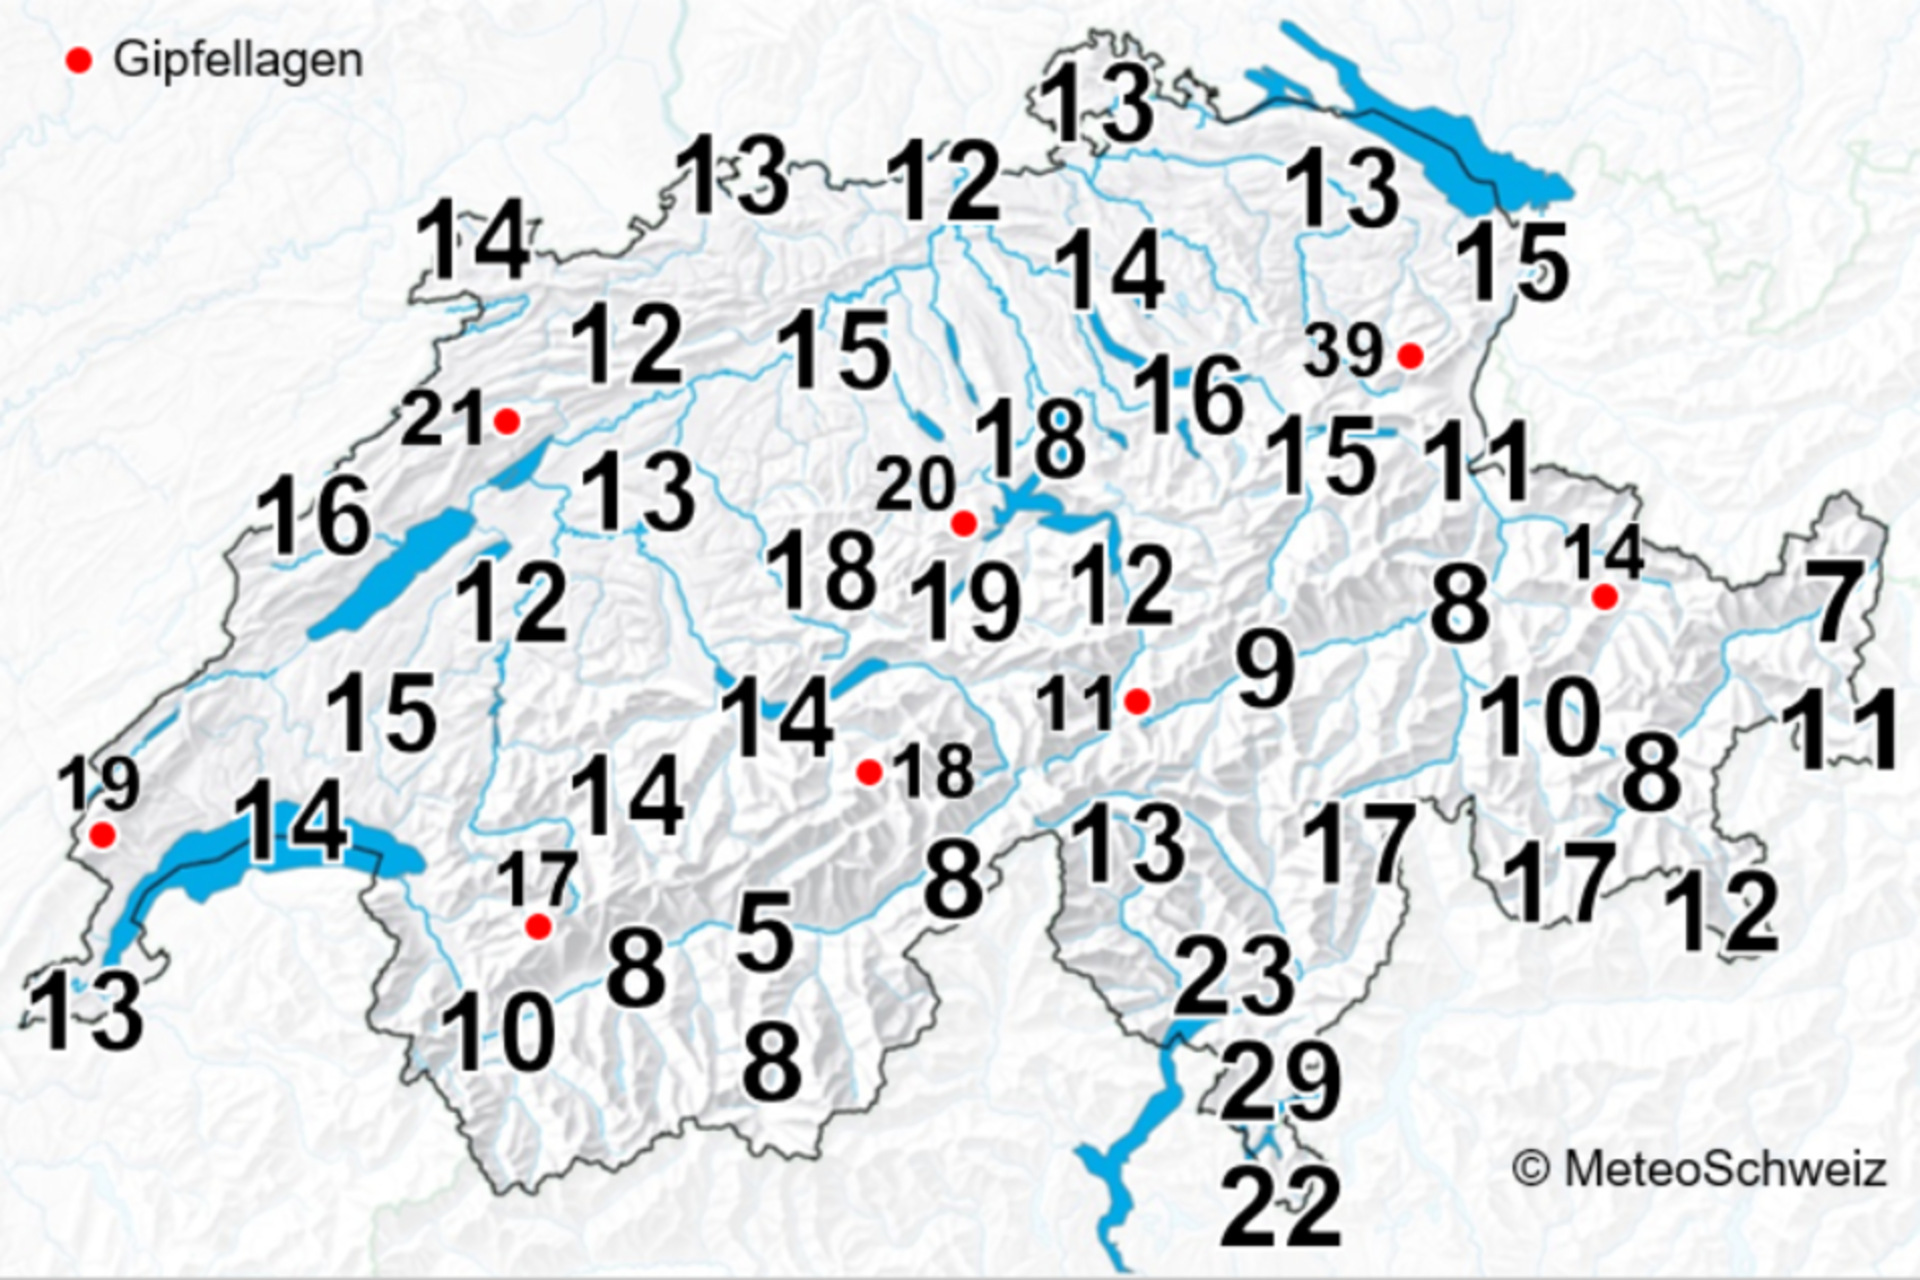 Fulmine: la media di giorni con temporali all’anno in Svizzera, intendendo almeno un temporale al giorno, per il periodo 2000-2020